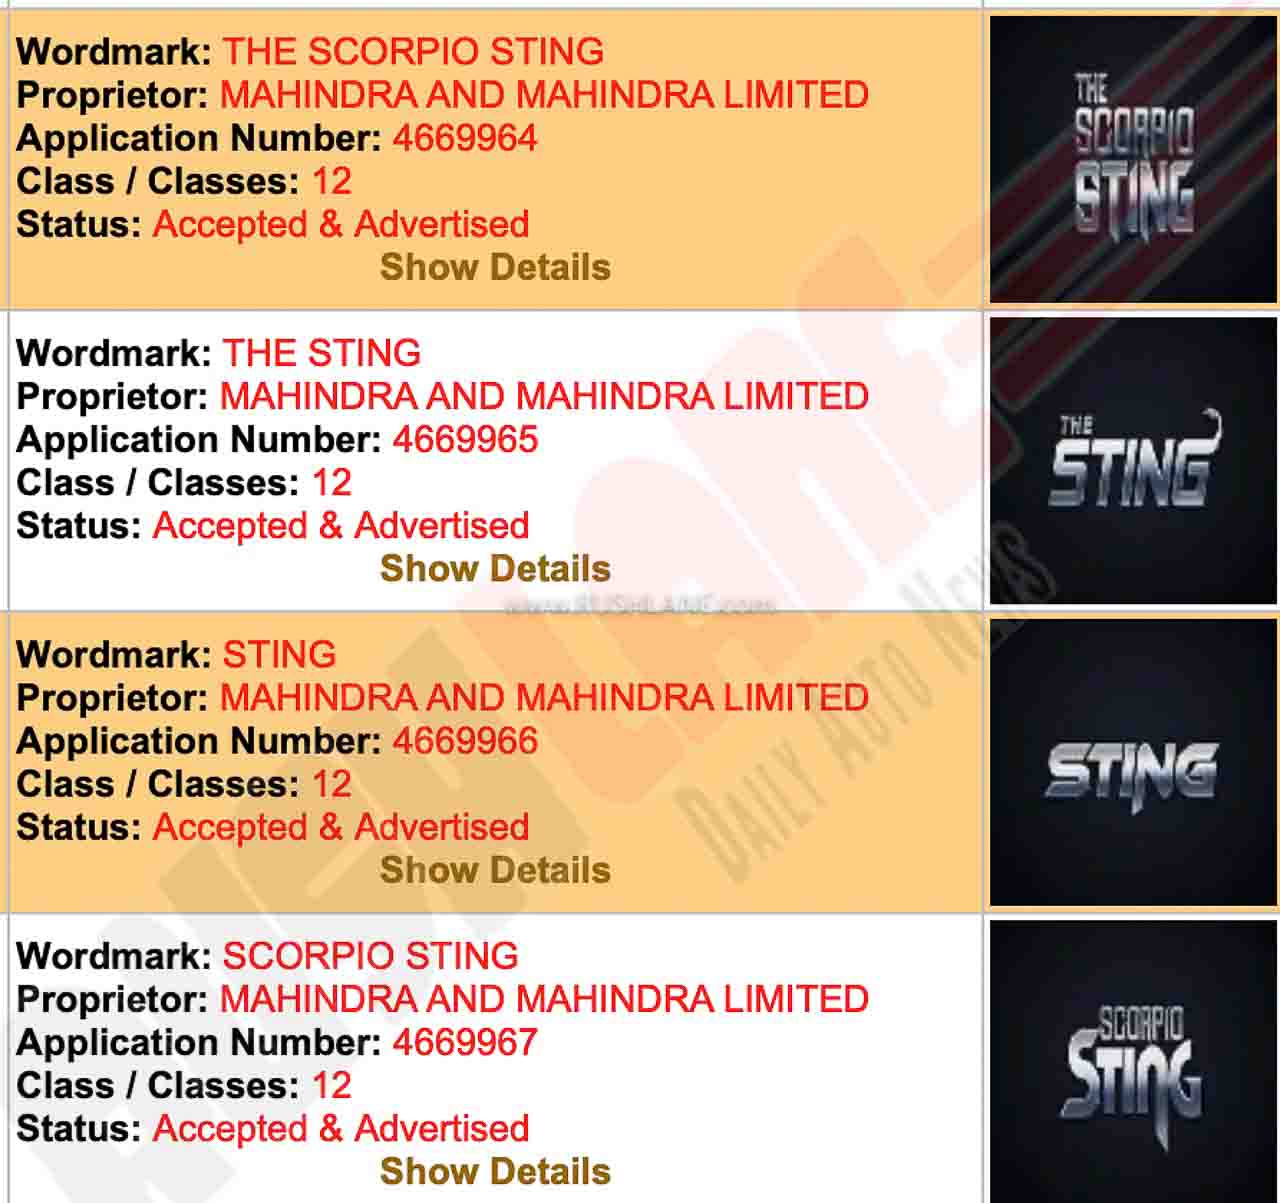 Mahindra Scorpio Sting Trademarks Registered